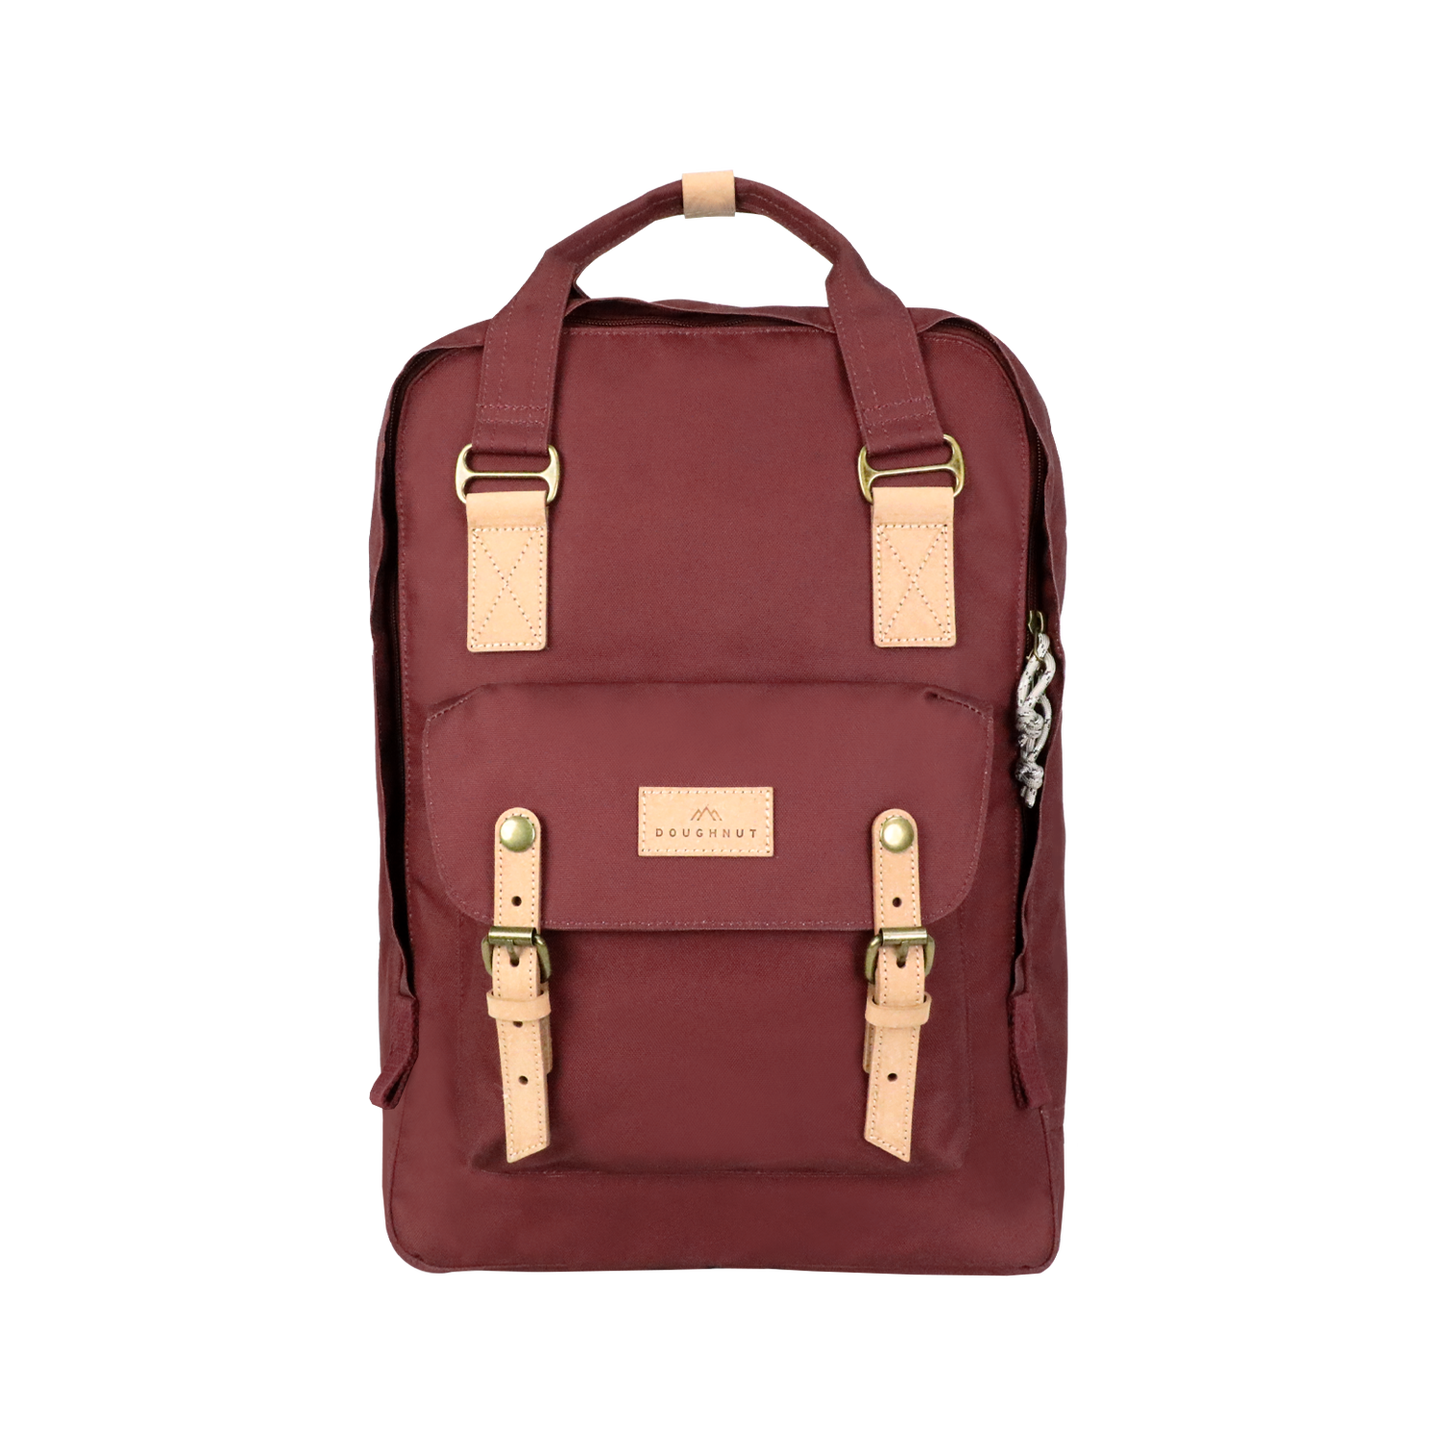 Macaroon Large Reborn Series Backpack